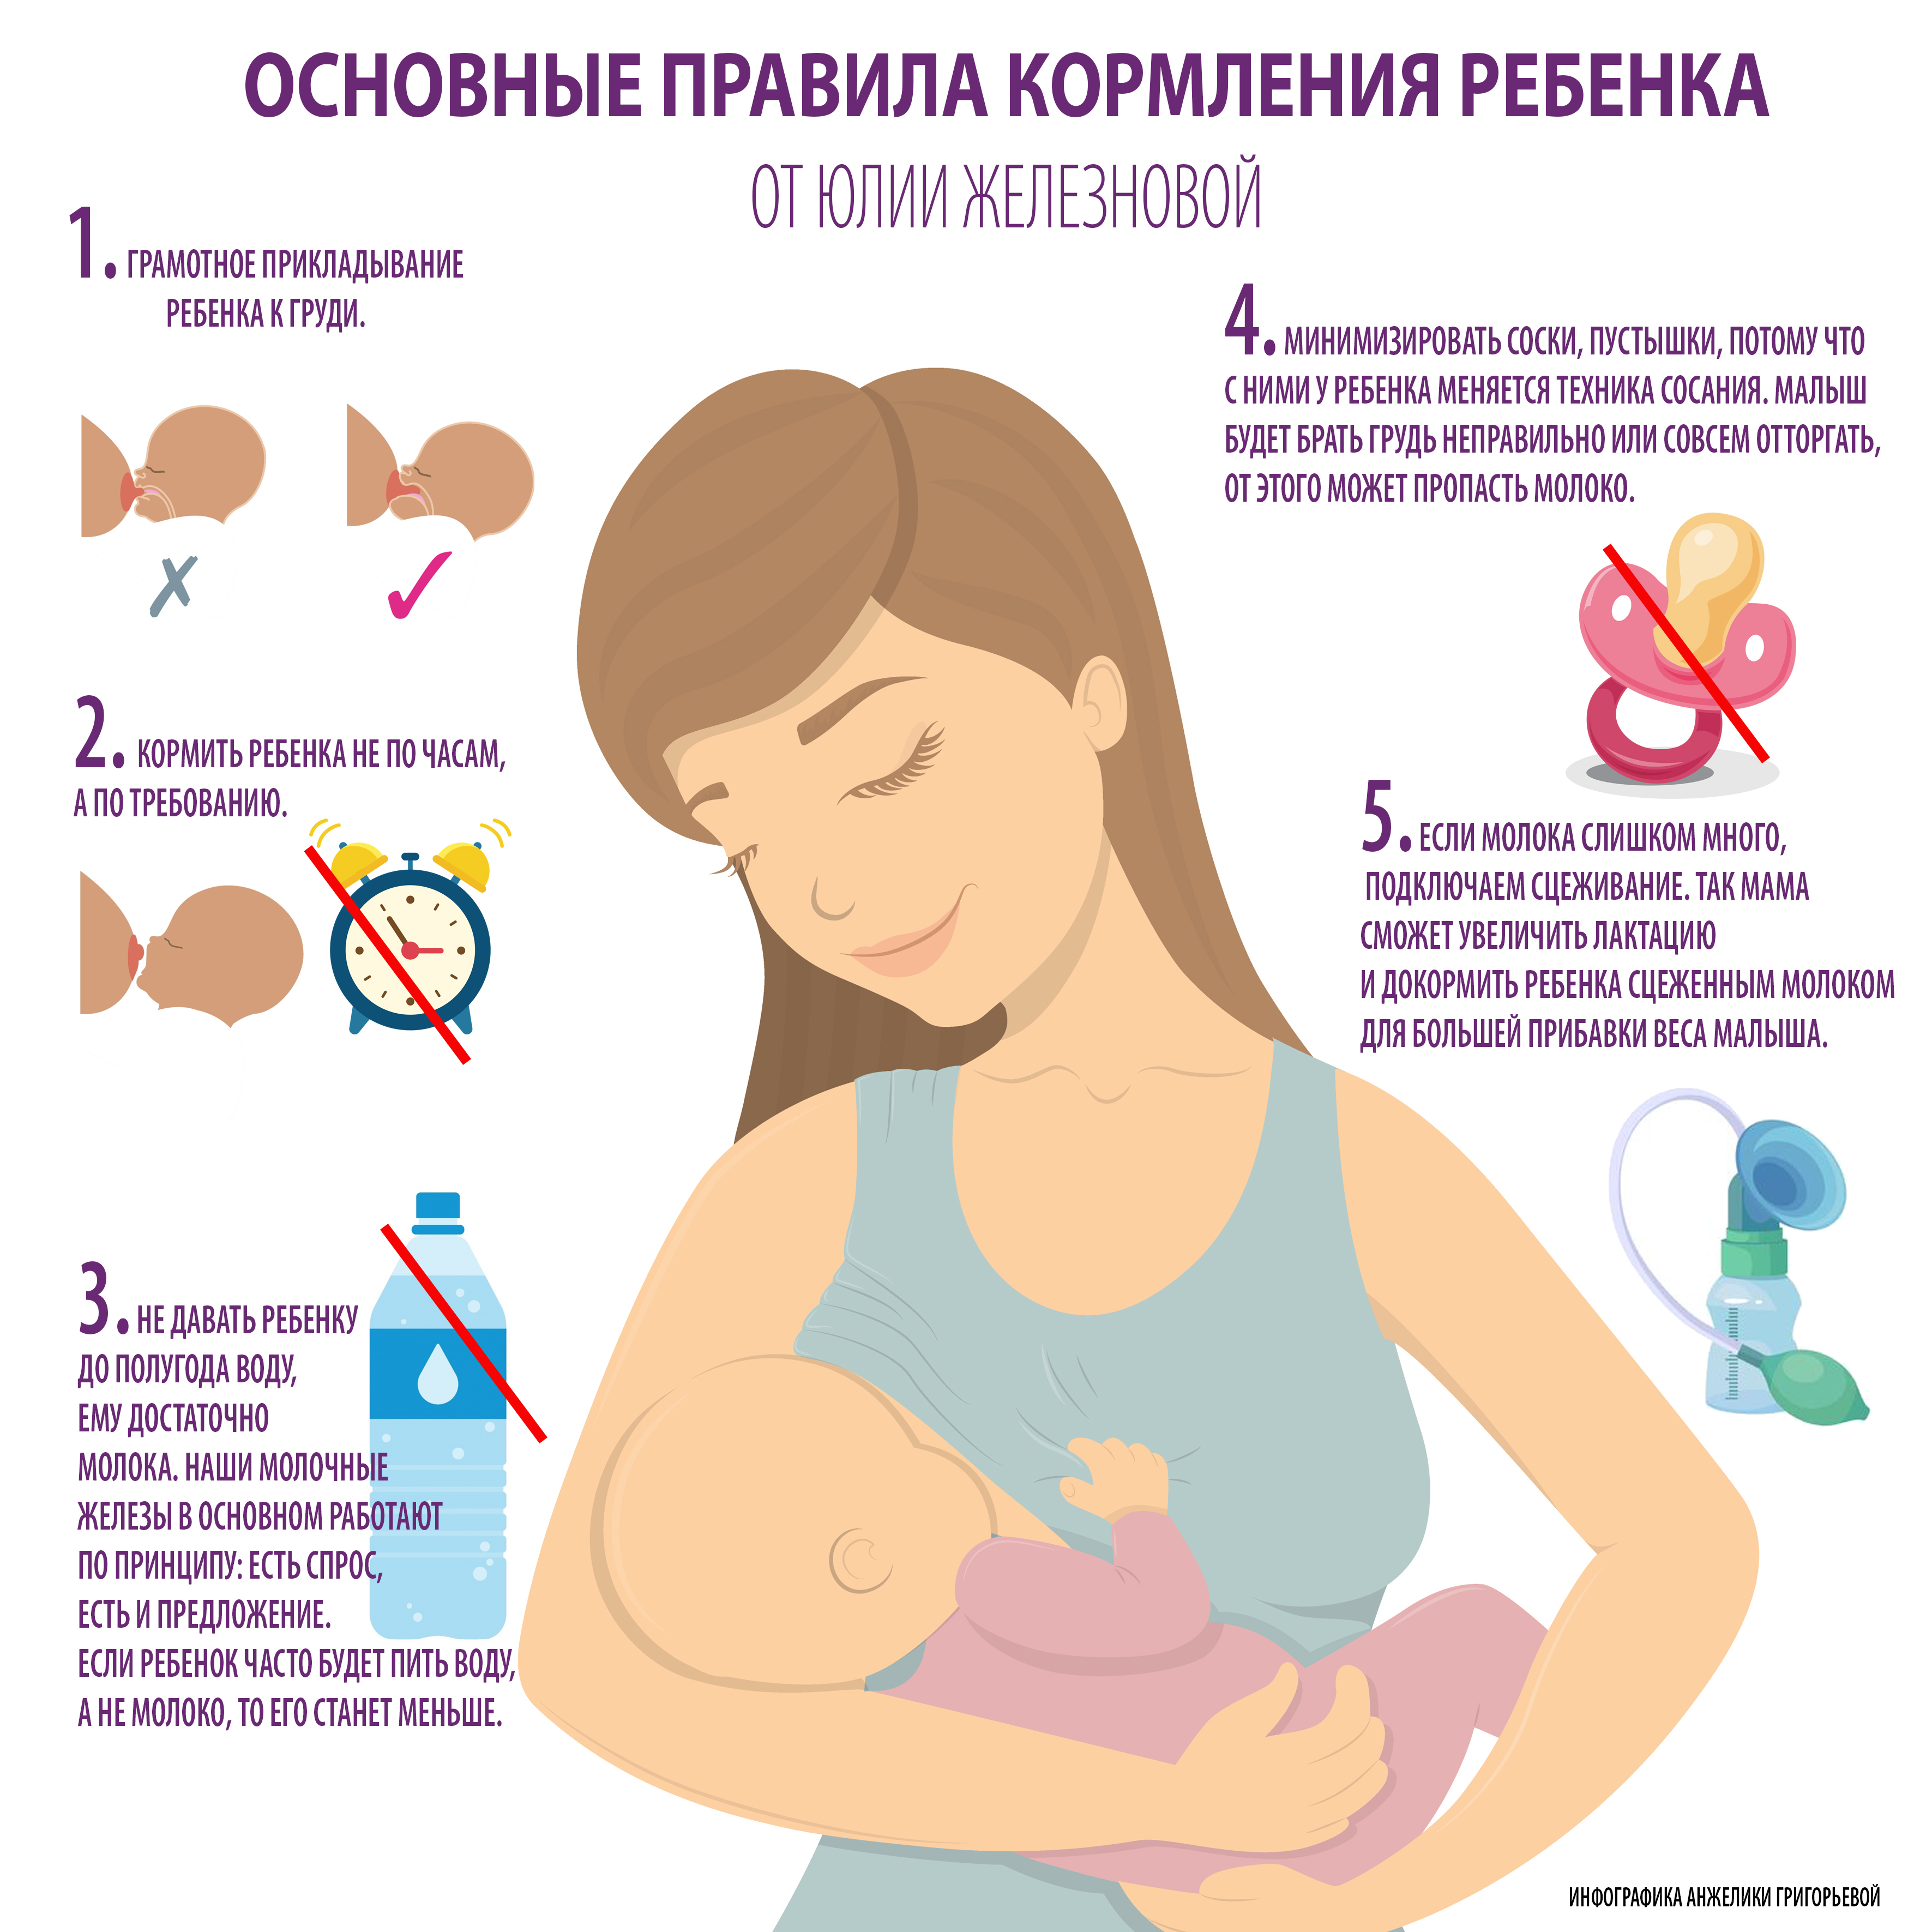 Рекомендации по тому, как прикладывать младенца к груди